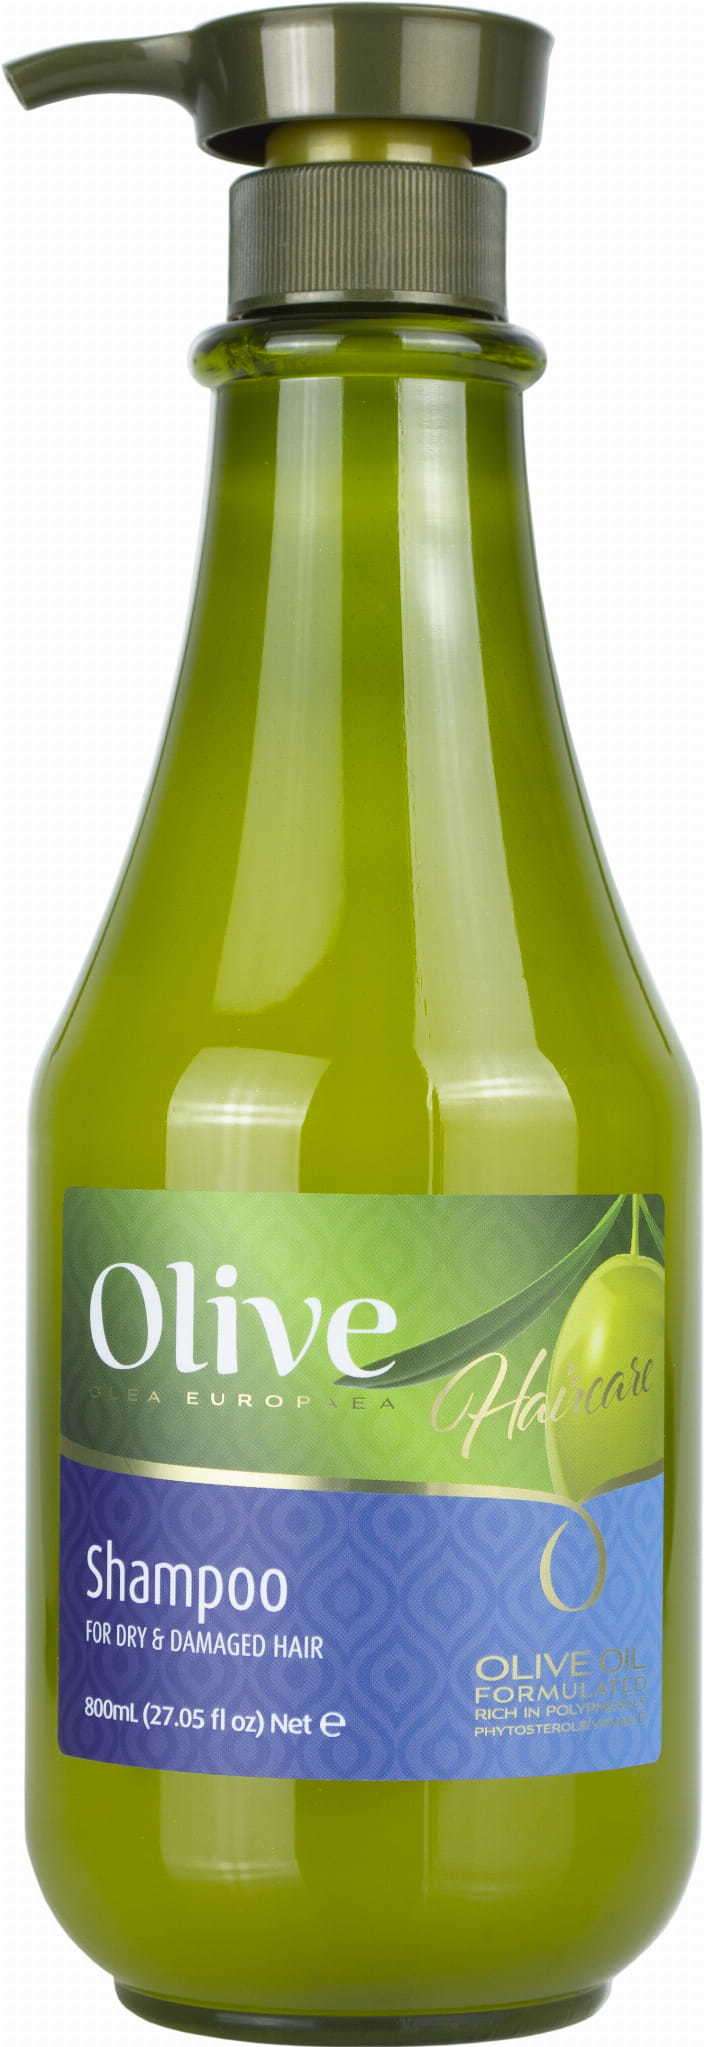 Frulatte Olive haircare szampon odżywczy z oliwek, 800ml